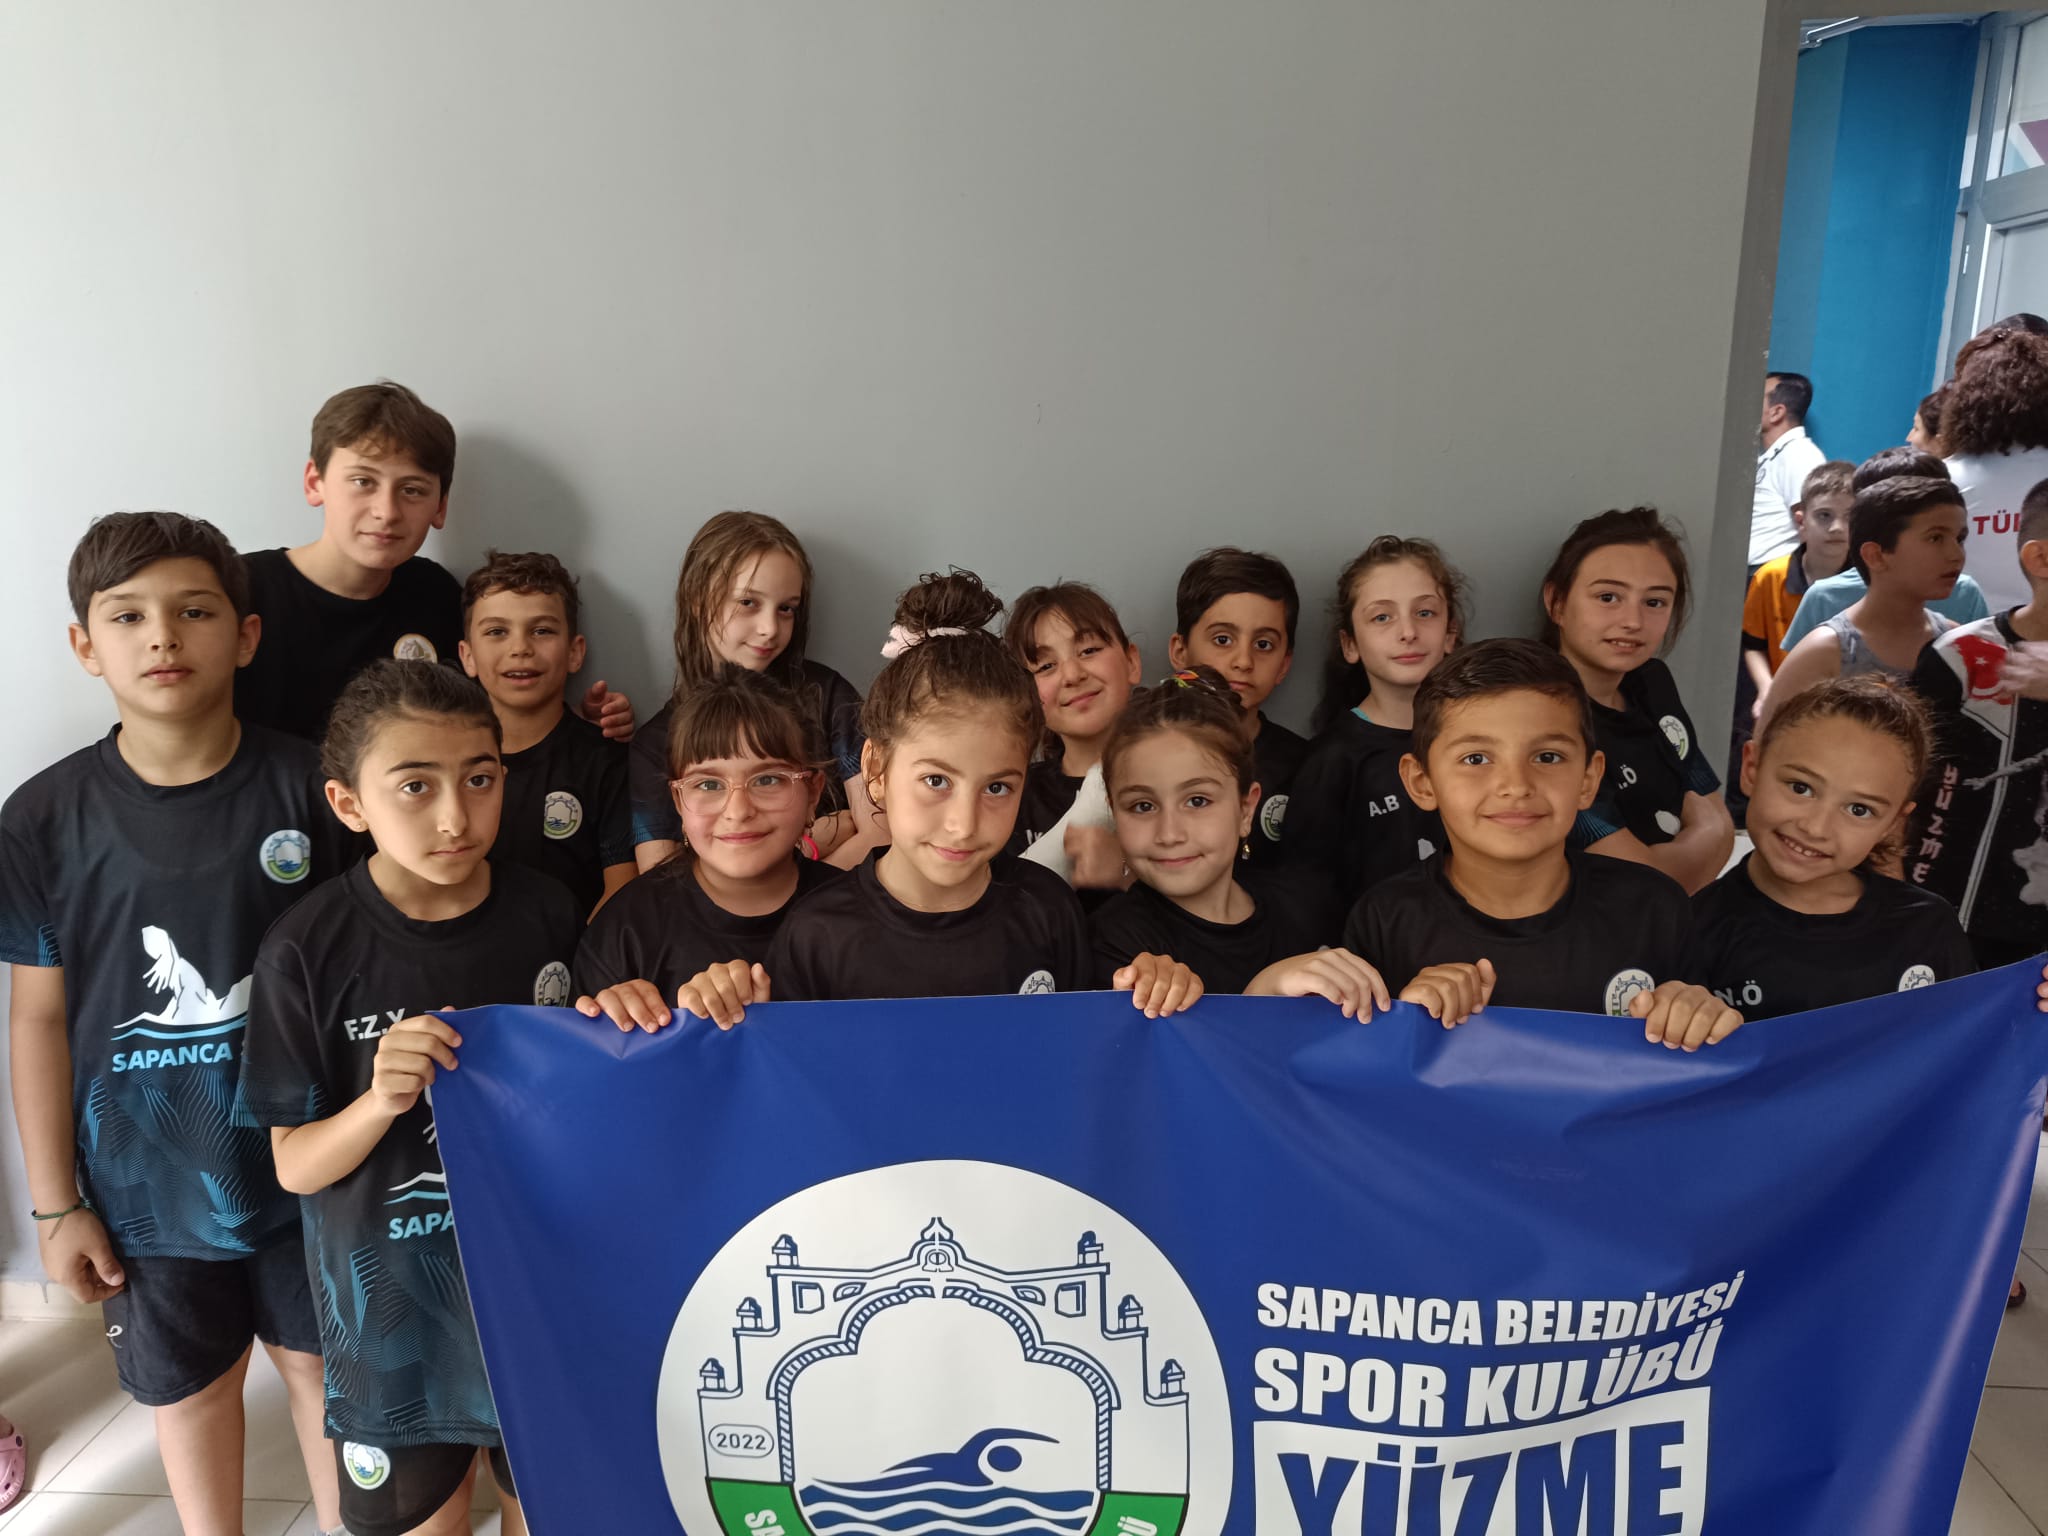 Sapanca Belediye Spor yüzücüleri büyük bir başarıya imza attı